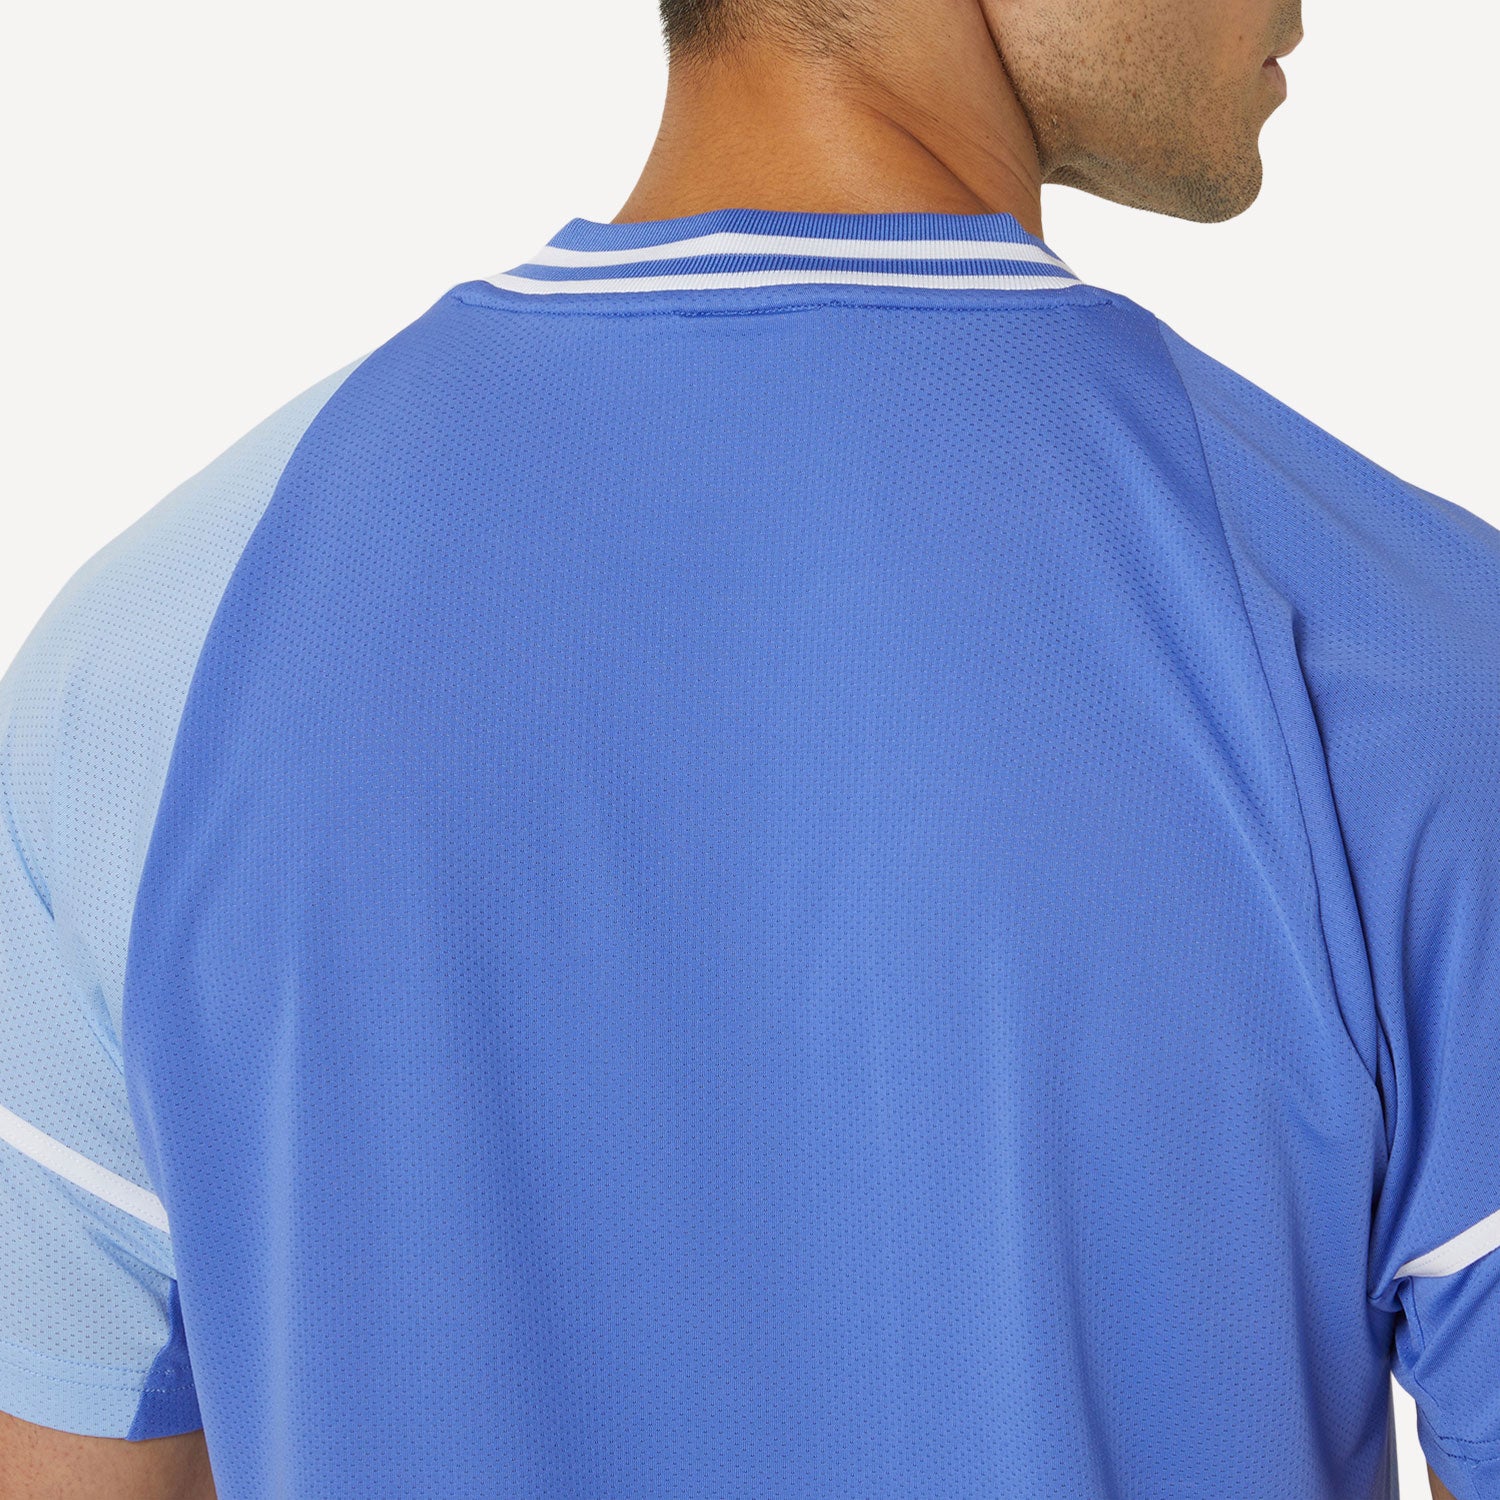 ASICS Match Men's Tennis Shirt - Blue (6)